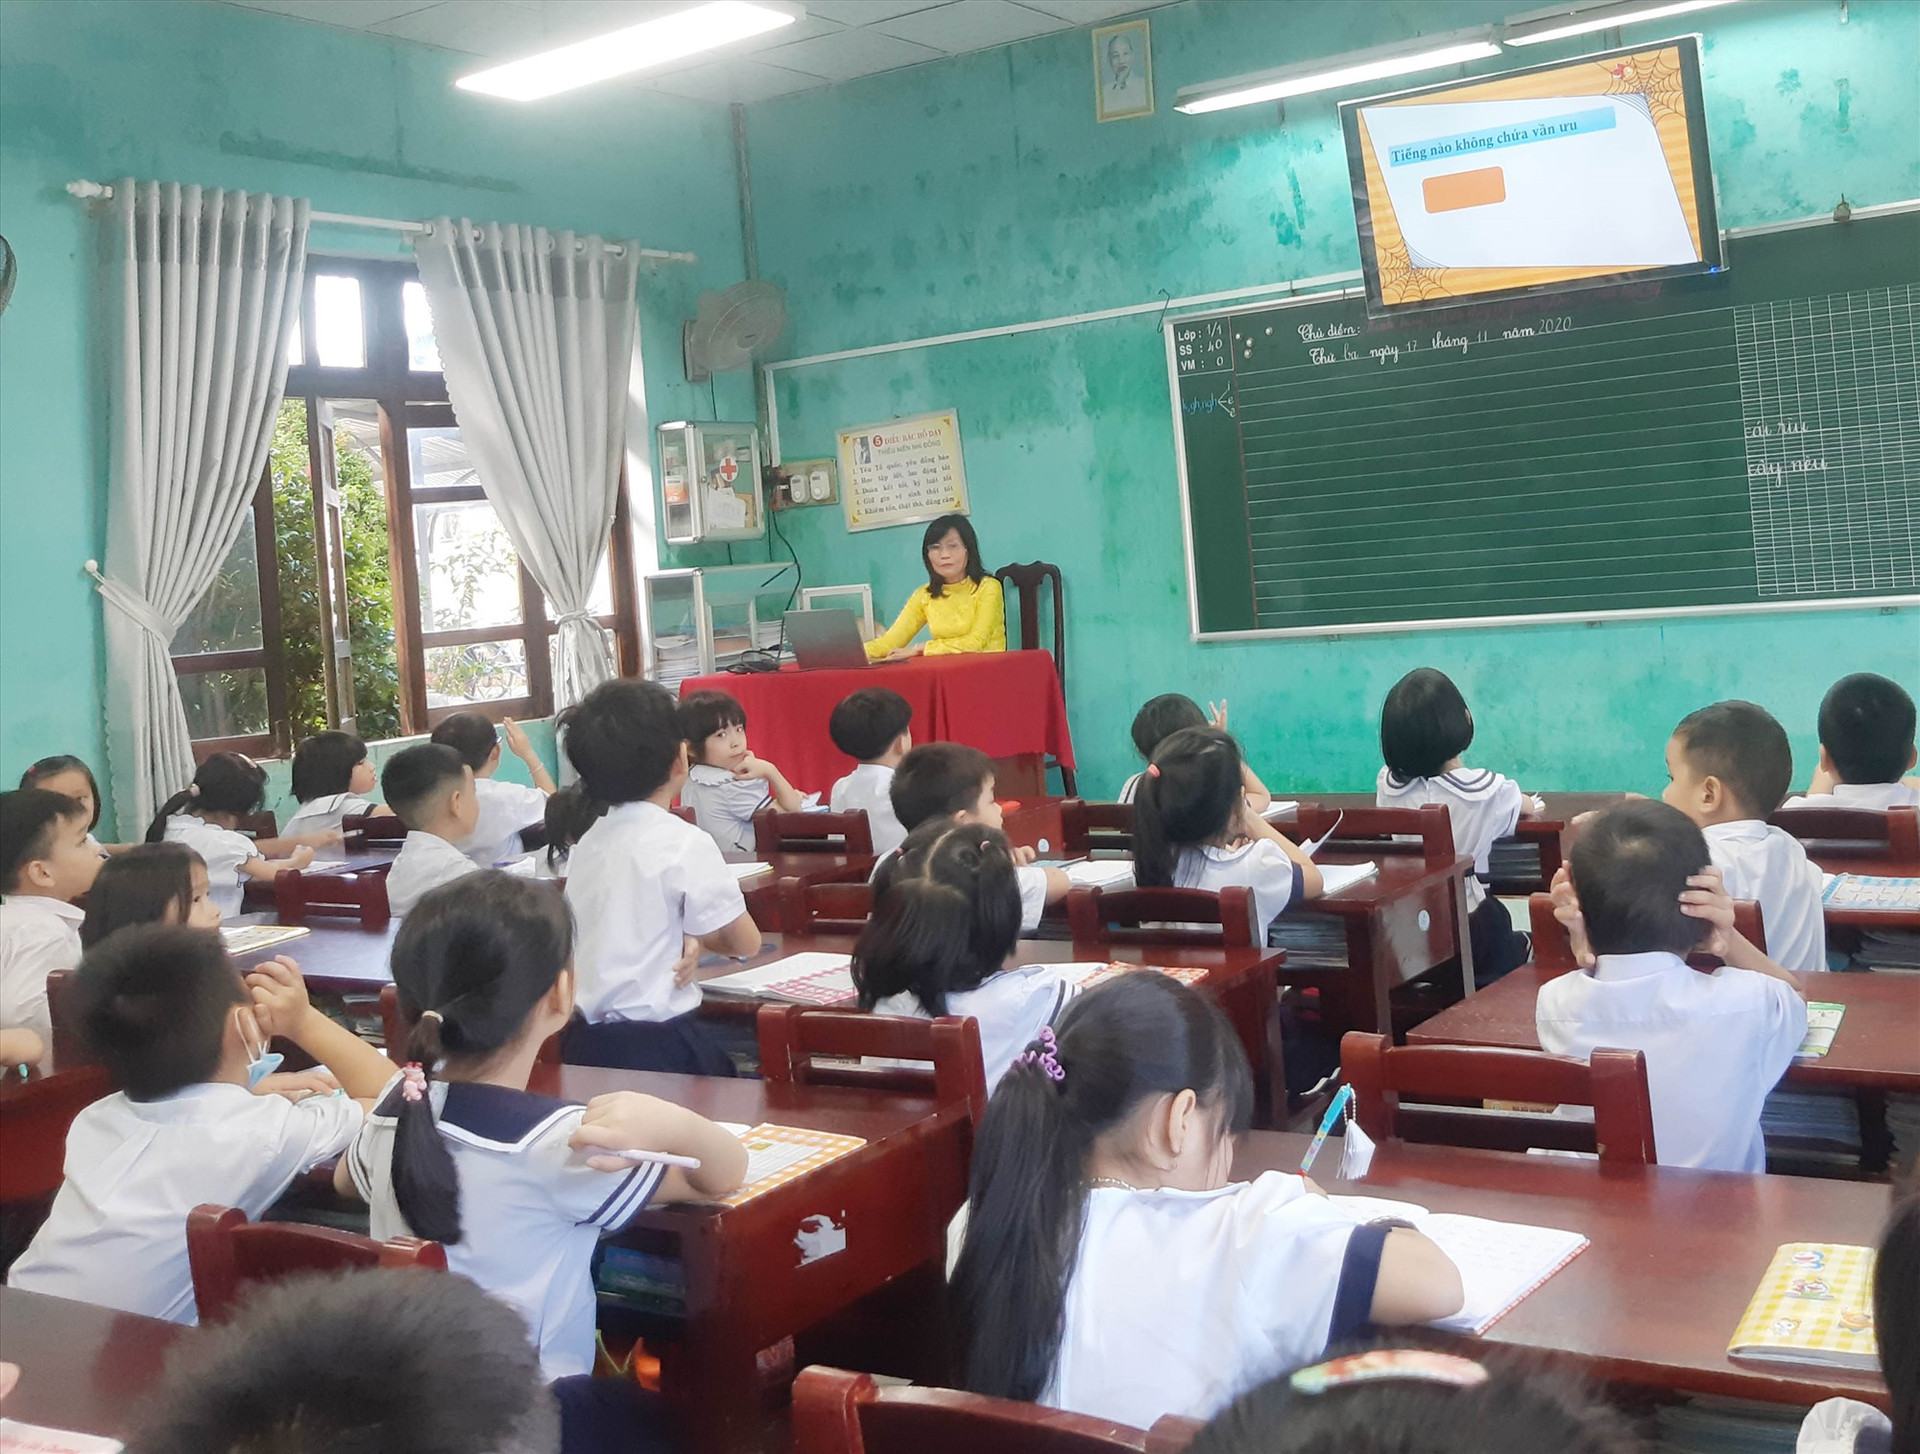 Lớp học lắp đặt mô hình “Ánh sáng thông minh” tại Trường TH Sơn Phong (Hội An). Ảnh: H.L